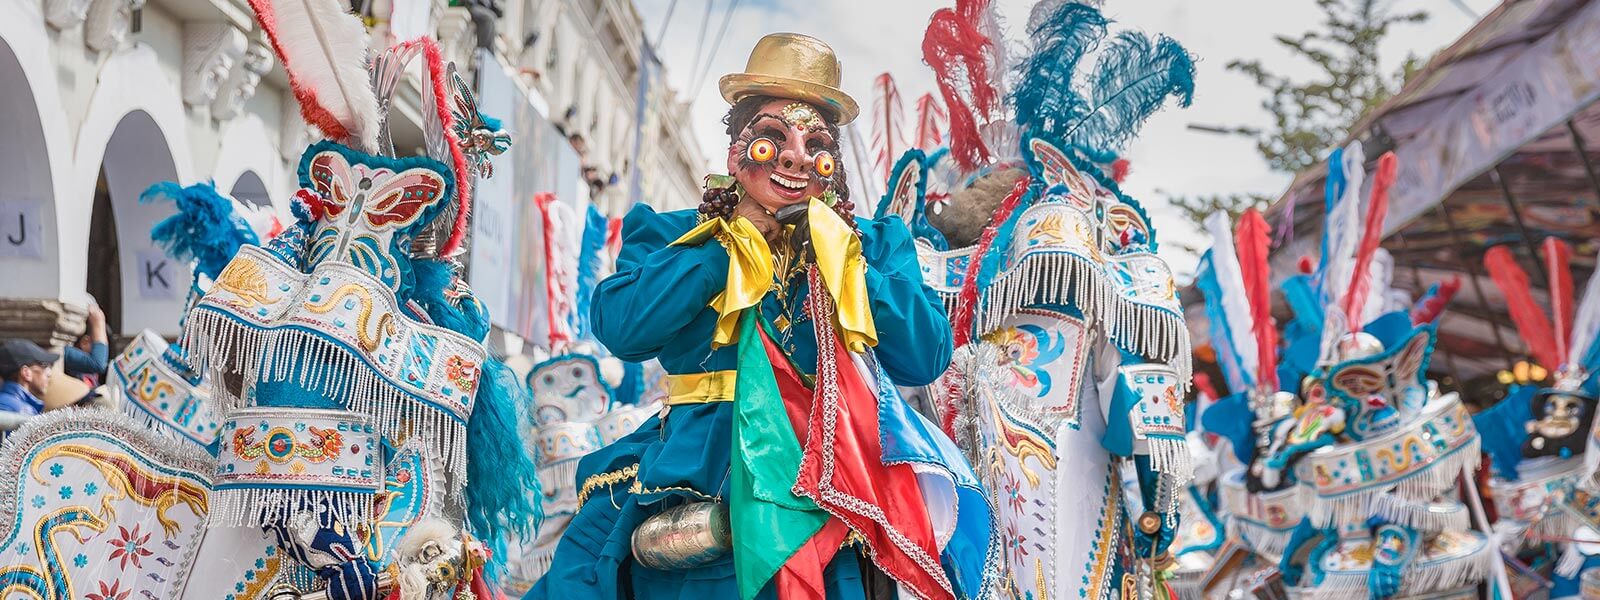 Carnavales en los países de habla hispana